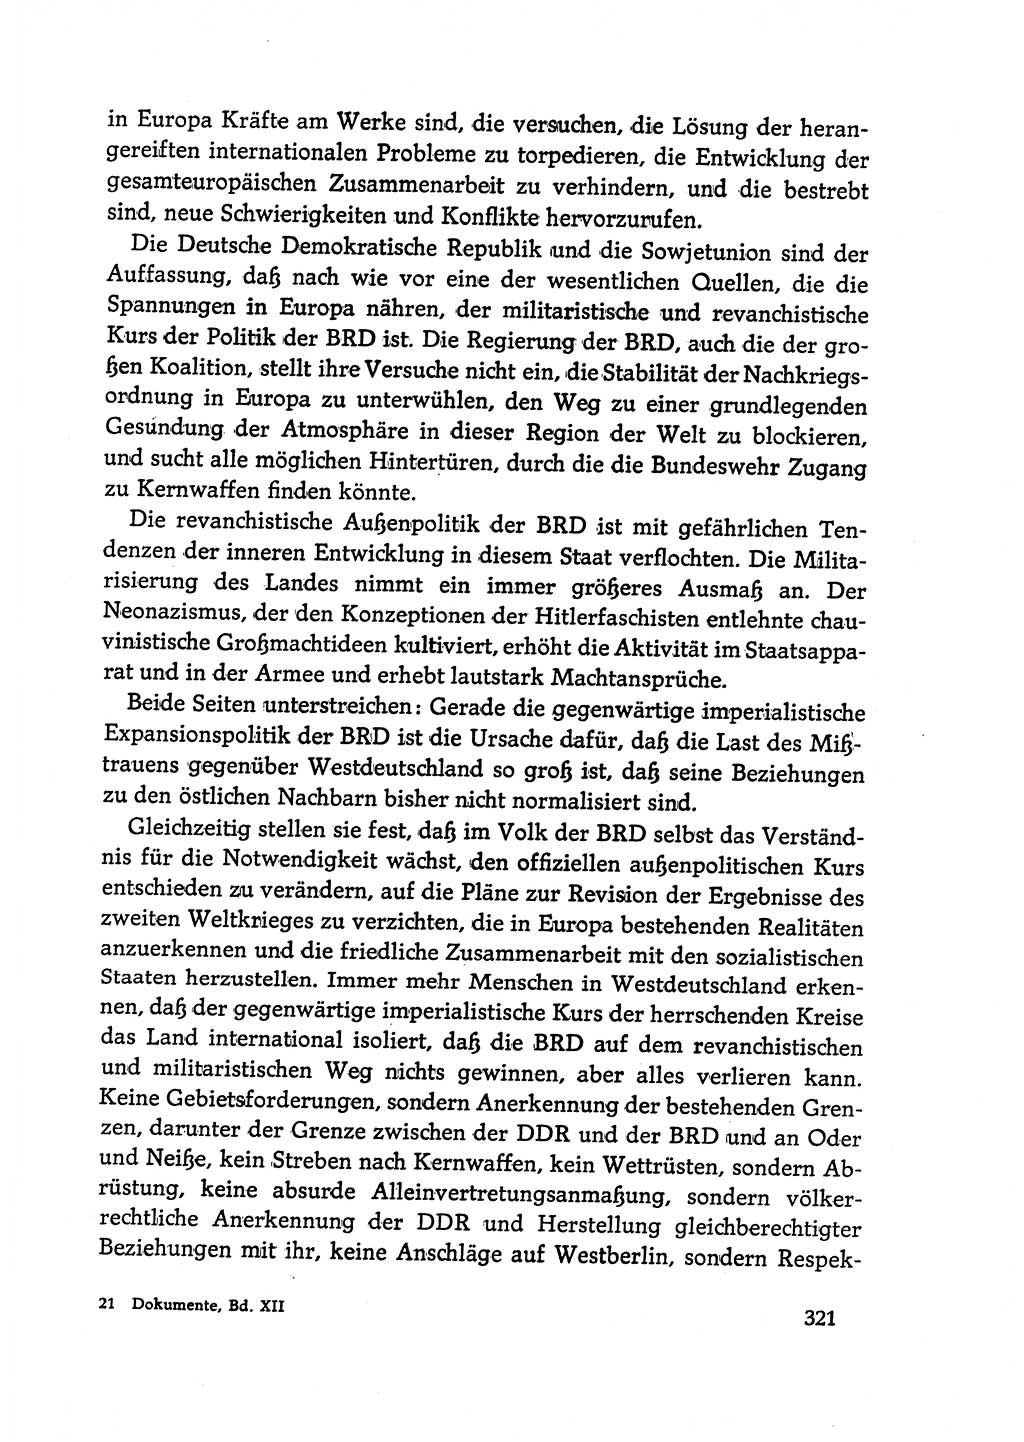 Dokumente der Sozialistischen Einheitspartei Deutschlands (SED) [Deutsche Demokratische Republik (DDR)] 1968-1969, Seite 321 (Dok. SED DDR 1968-1969, S. 321)